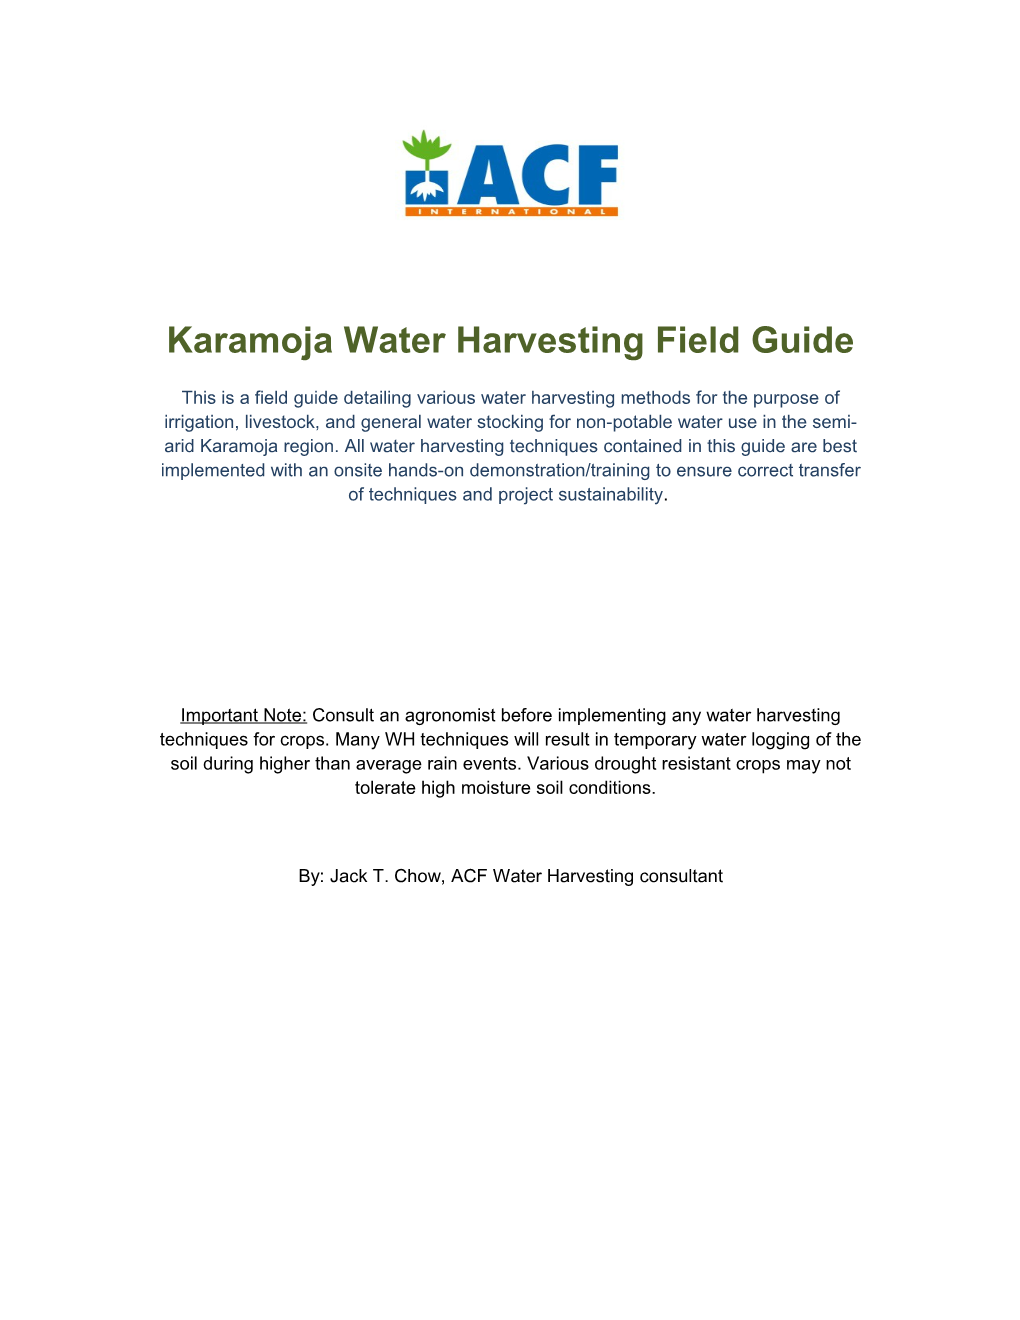 Karamoja Water Harvesting Field Guide/Implementation